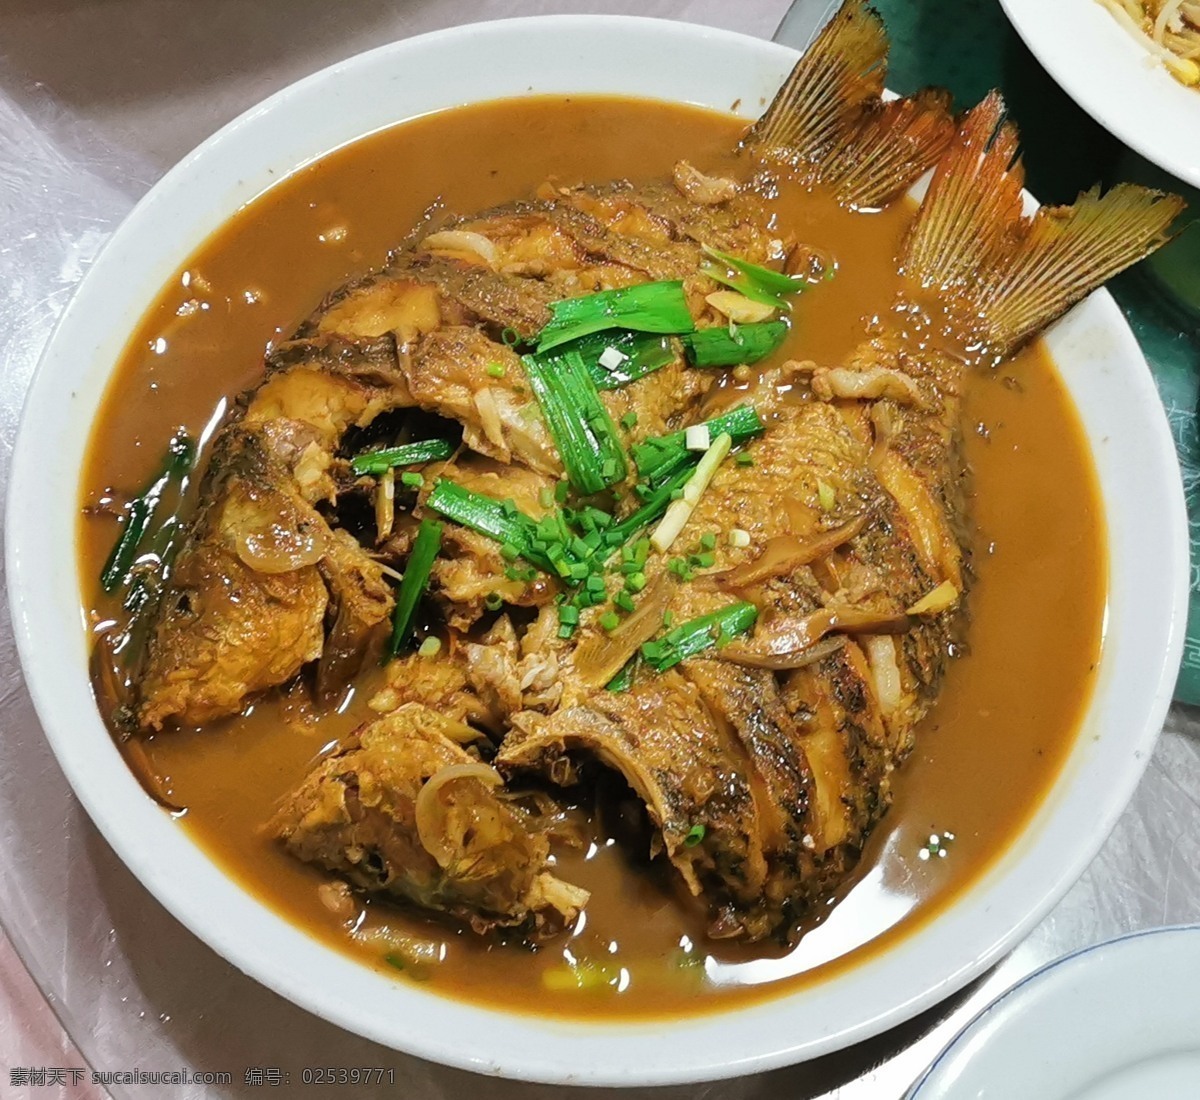 鱼 红烧鱼 黄焖鱼 鲤鱼 美食 餐饮美食 传统美食